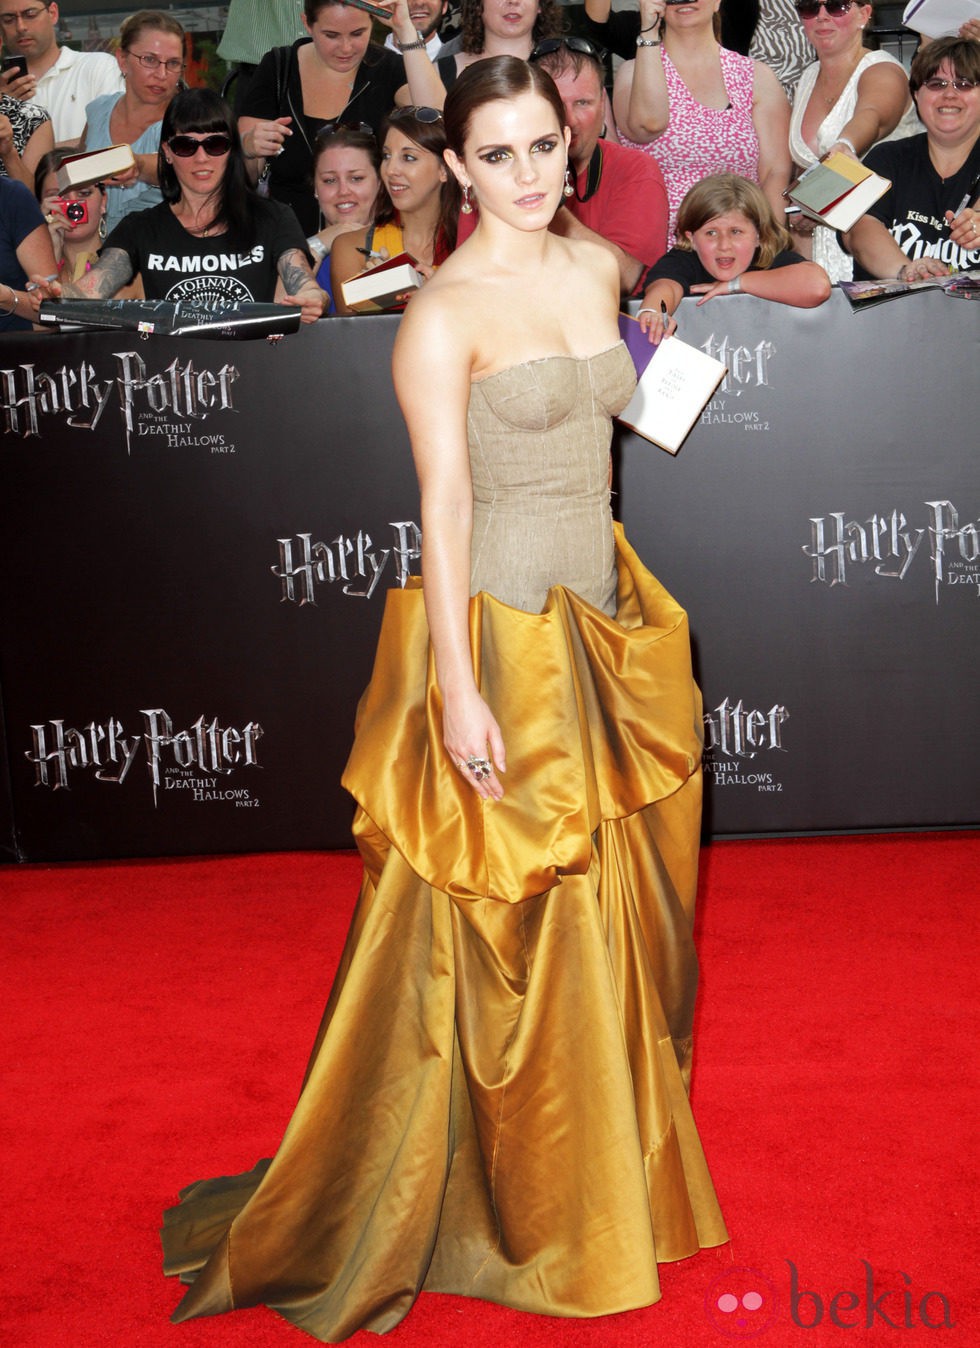 Emma Watson, de dorado en Nueva York